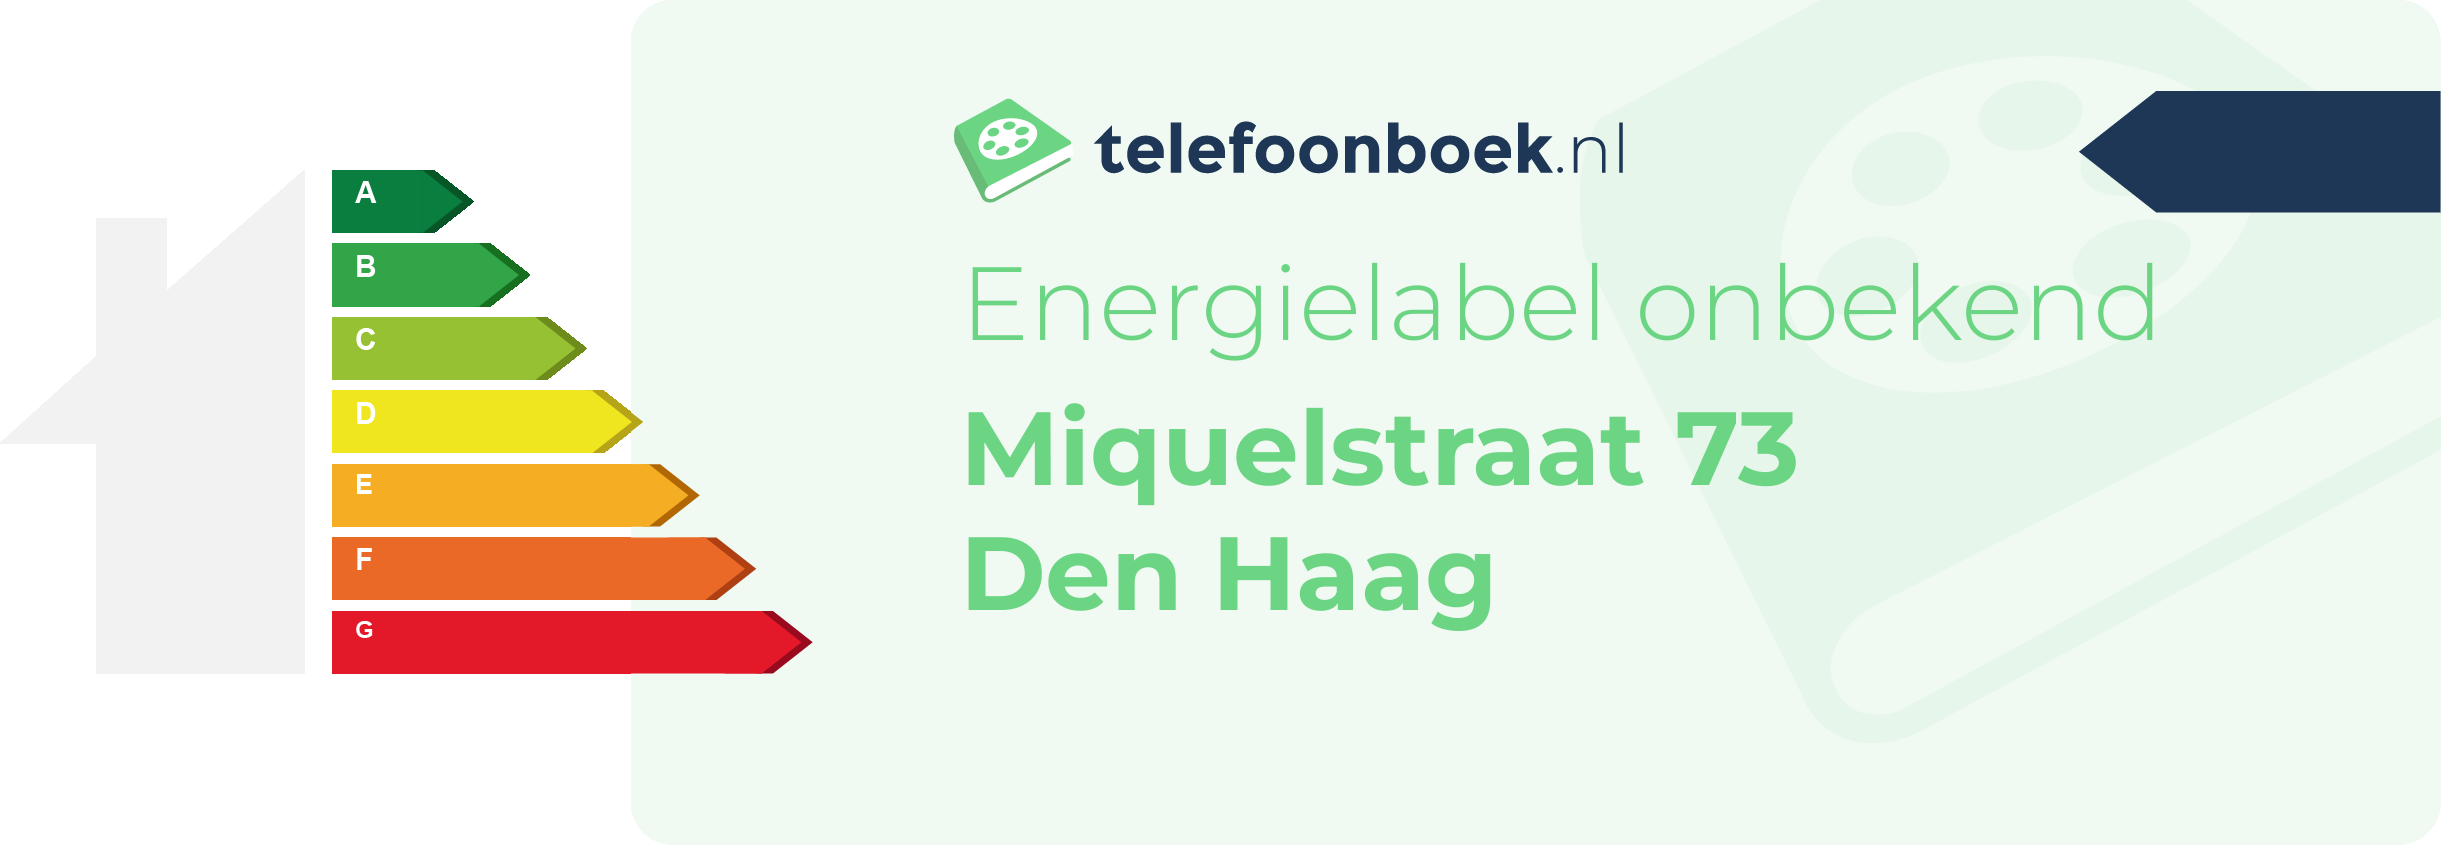 Energielabel Miquelstraat 73 Den Haag